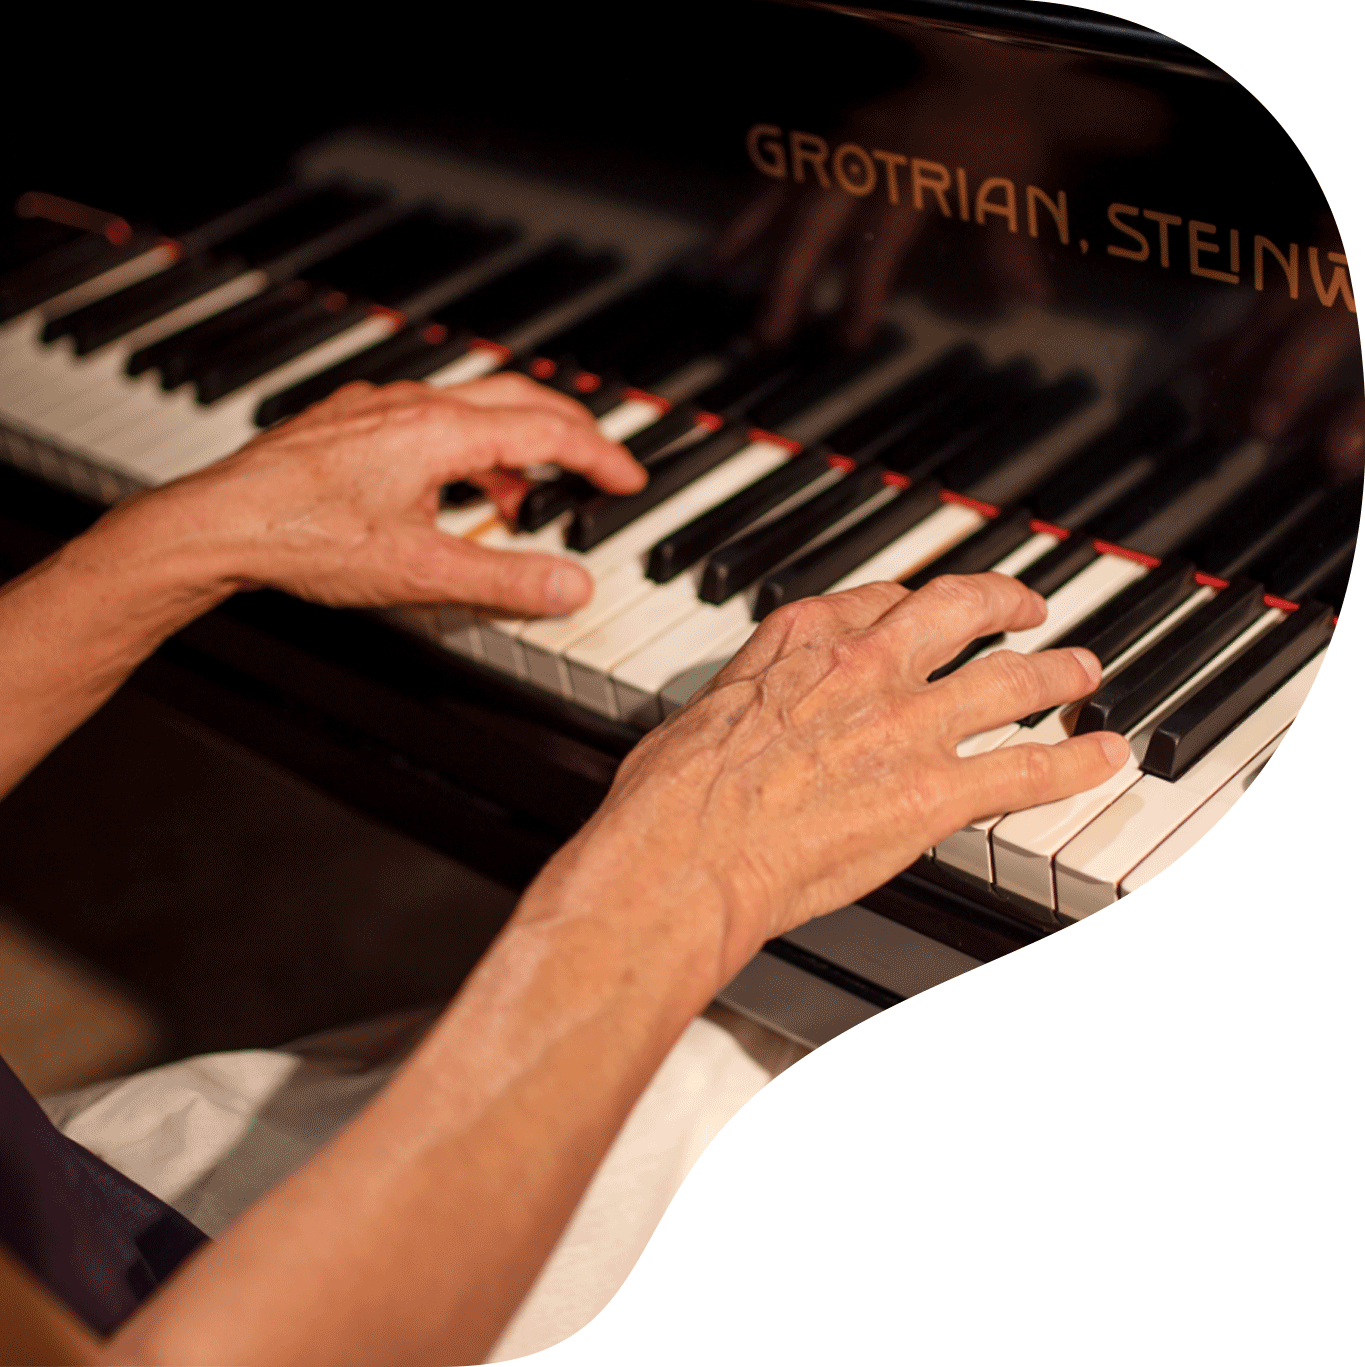 Foto in Klavierform zeigt Susanne Fischer am Klavier/Piano